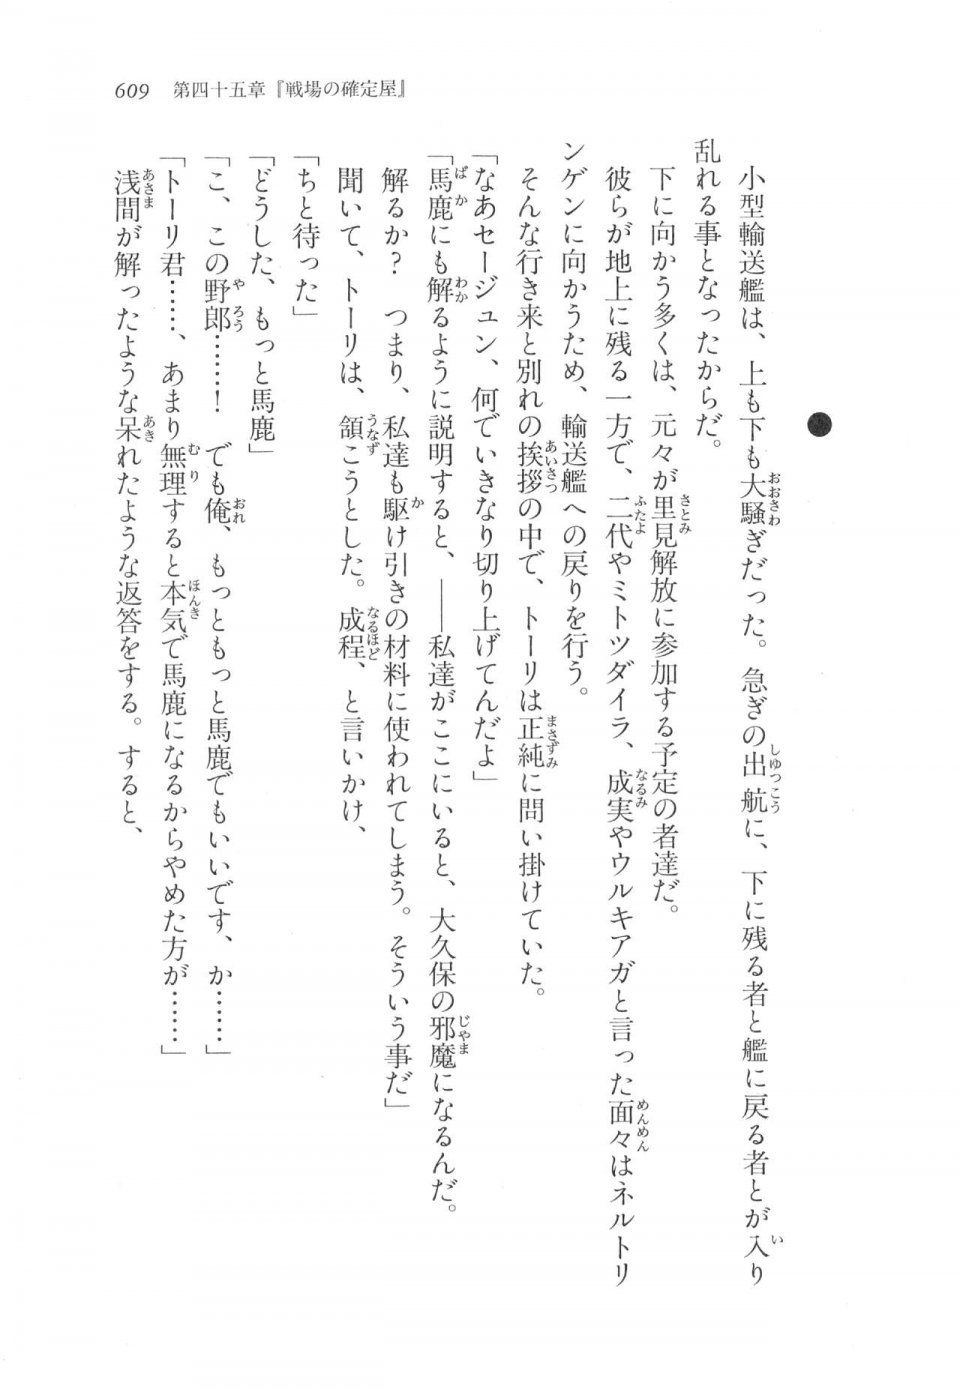 Kyoukai Senjou no Horizon LN Vol 17(7B) - Photo #611